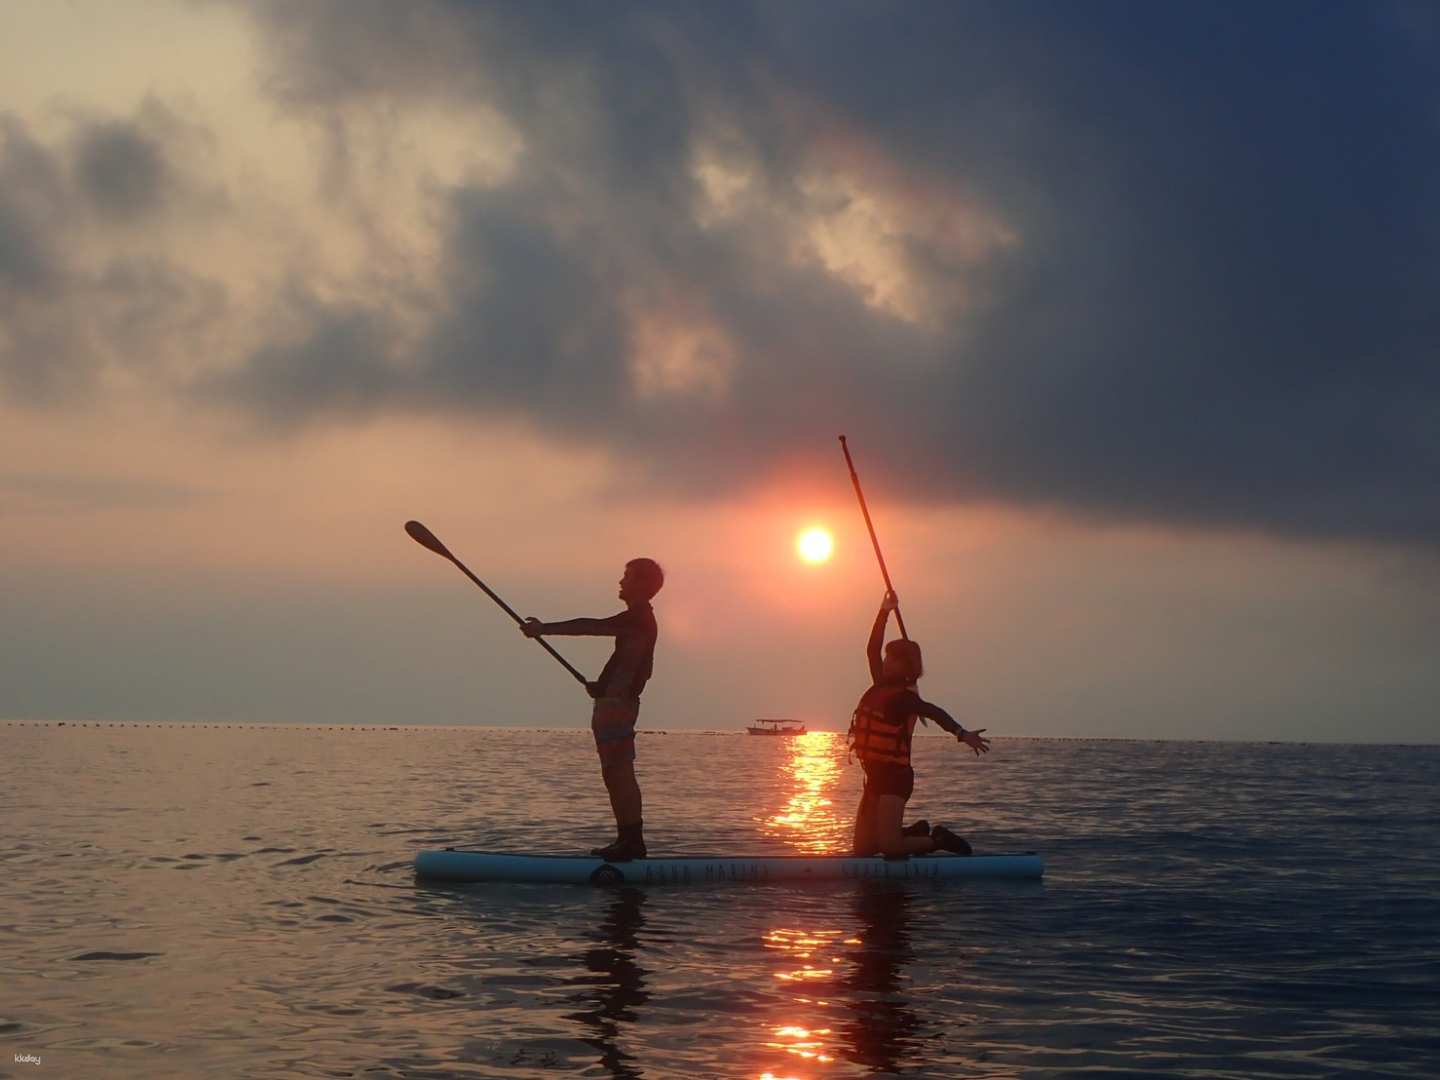 澎湖-樂福海洋工坊| 山水沙灘SUP立式划槳日光&夕陽體驗| 限時 9 折